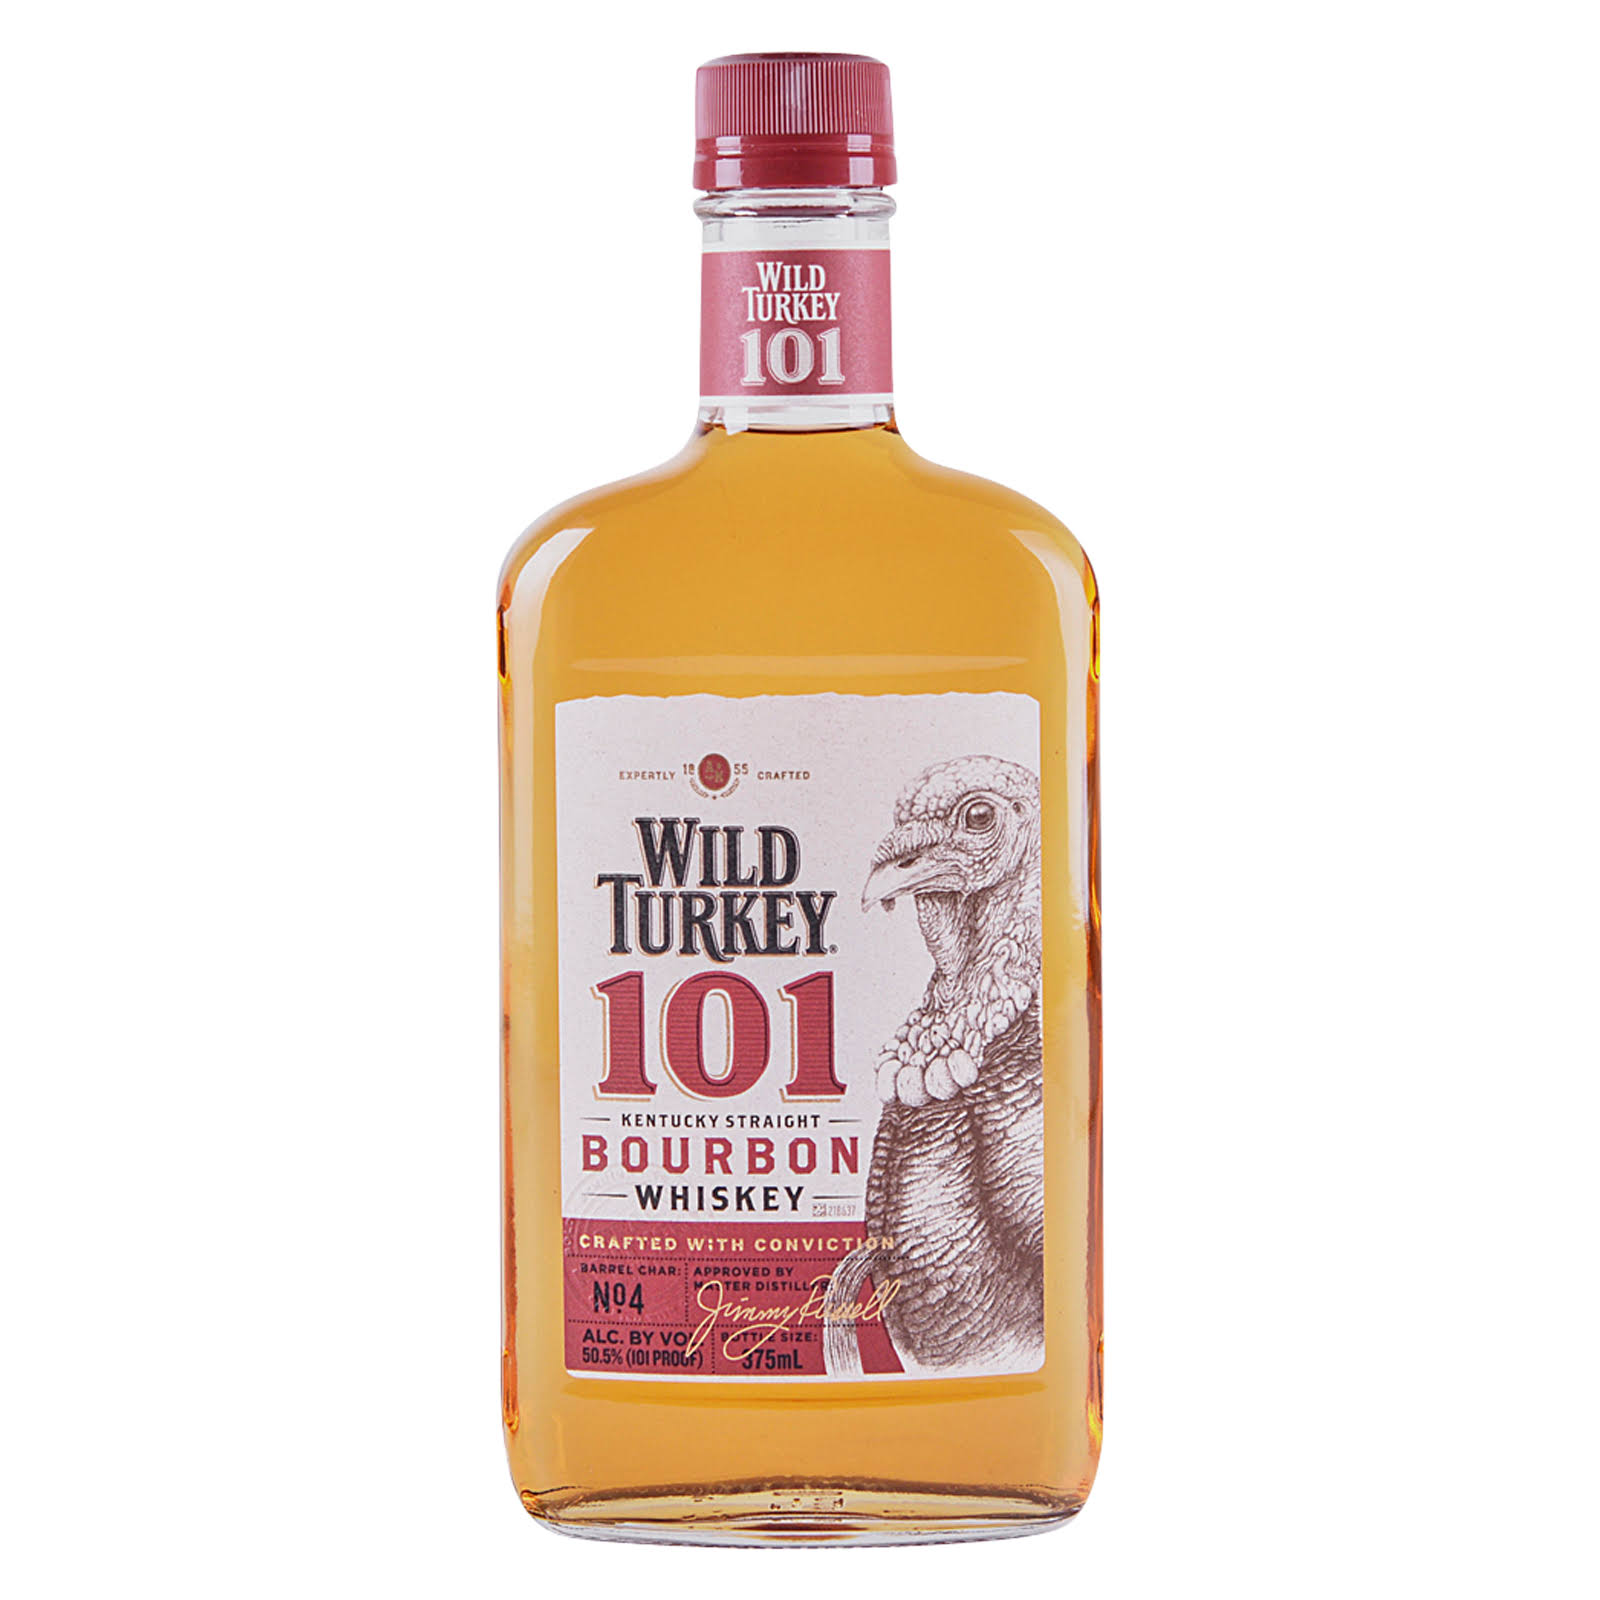 Wild Turkey Whiskey, Kentucky Straight Bourbon, 101 - 375 ml